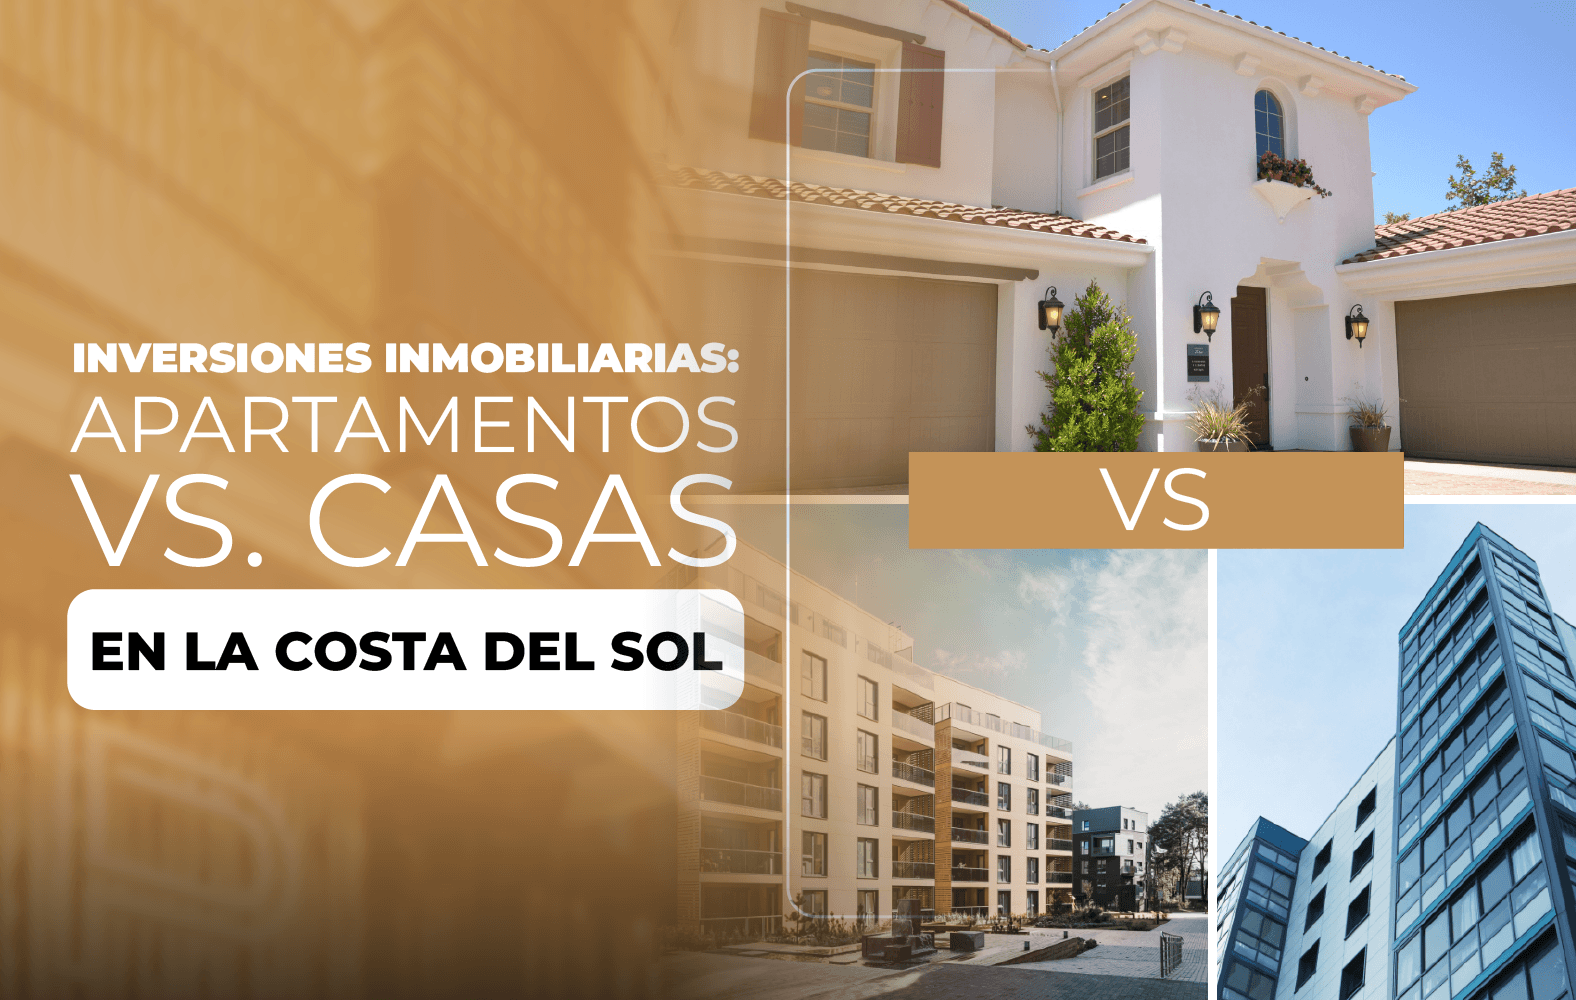 Inversiones Inmobiliarias: Apartamentos vs. Casas en la Costa del Sol